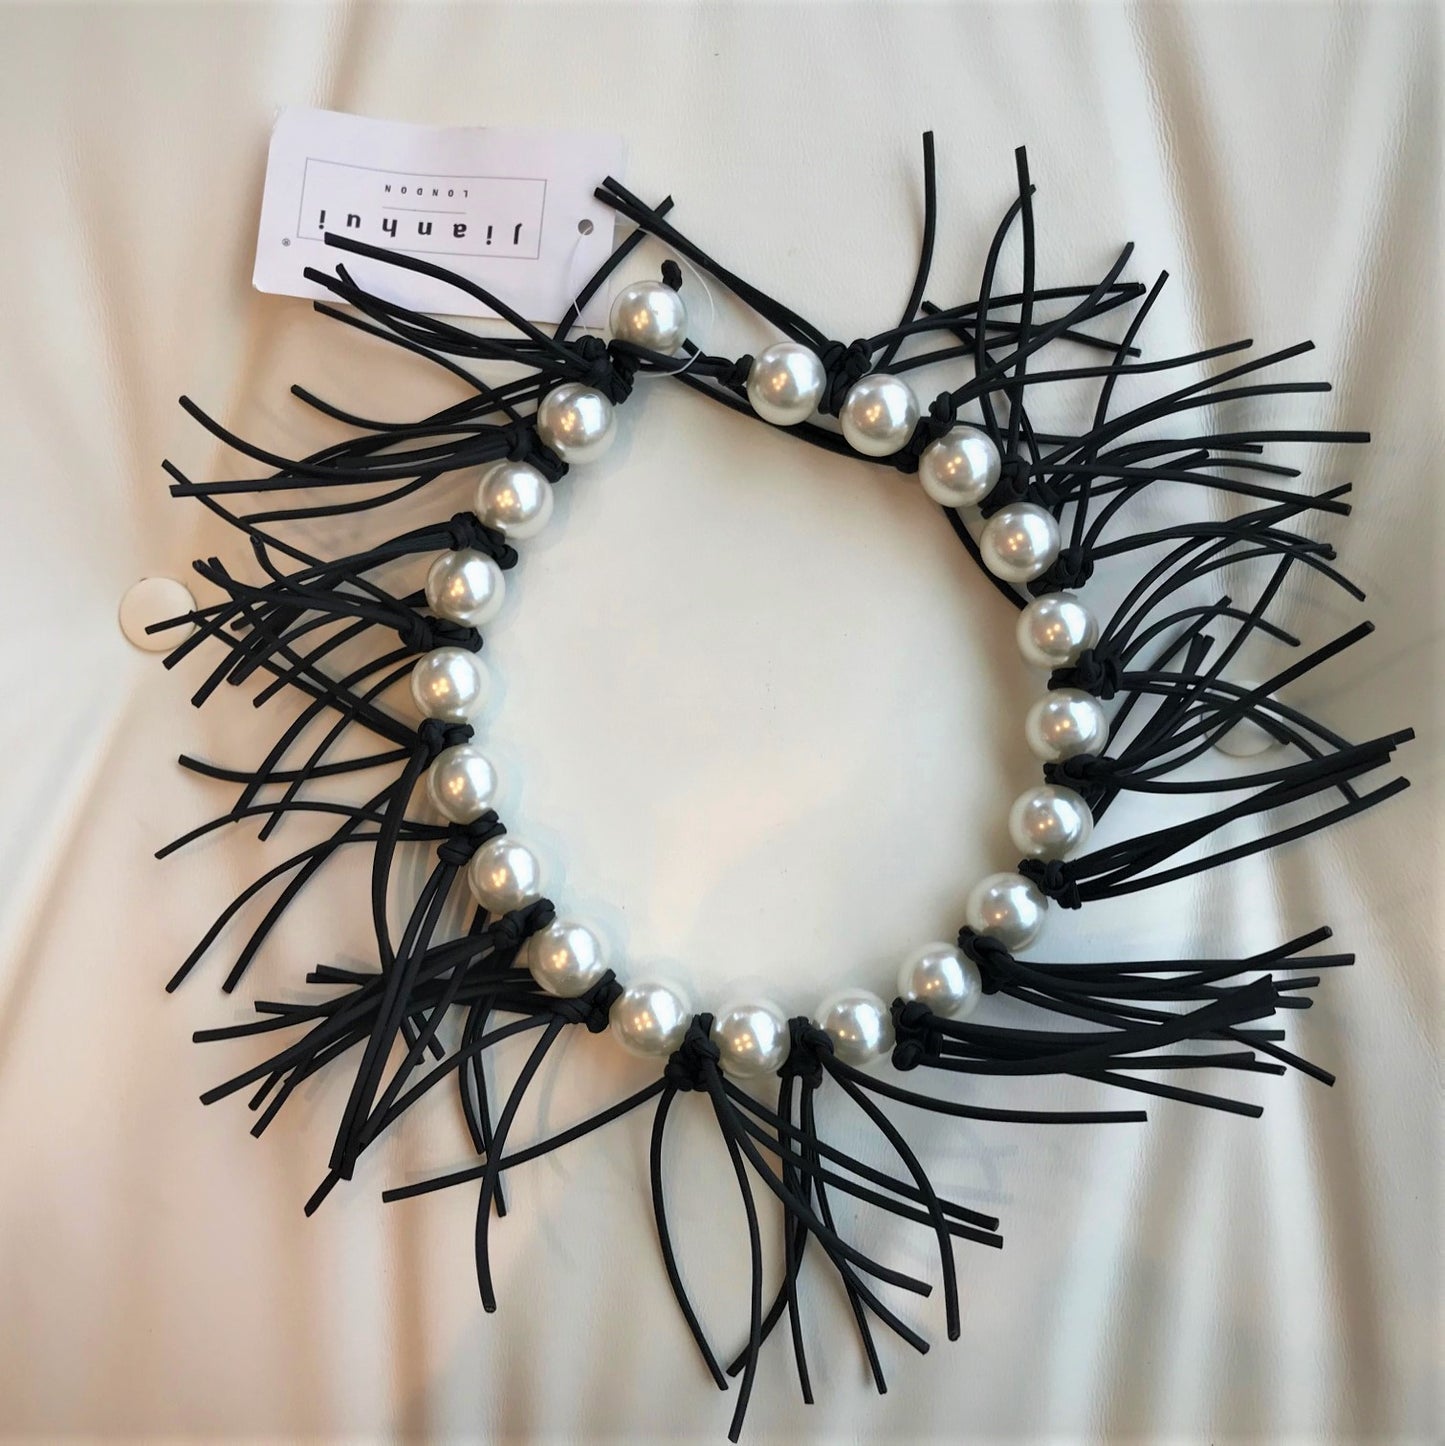 Jianhui London Giant Pearl & Fringe Necklace